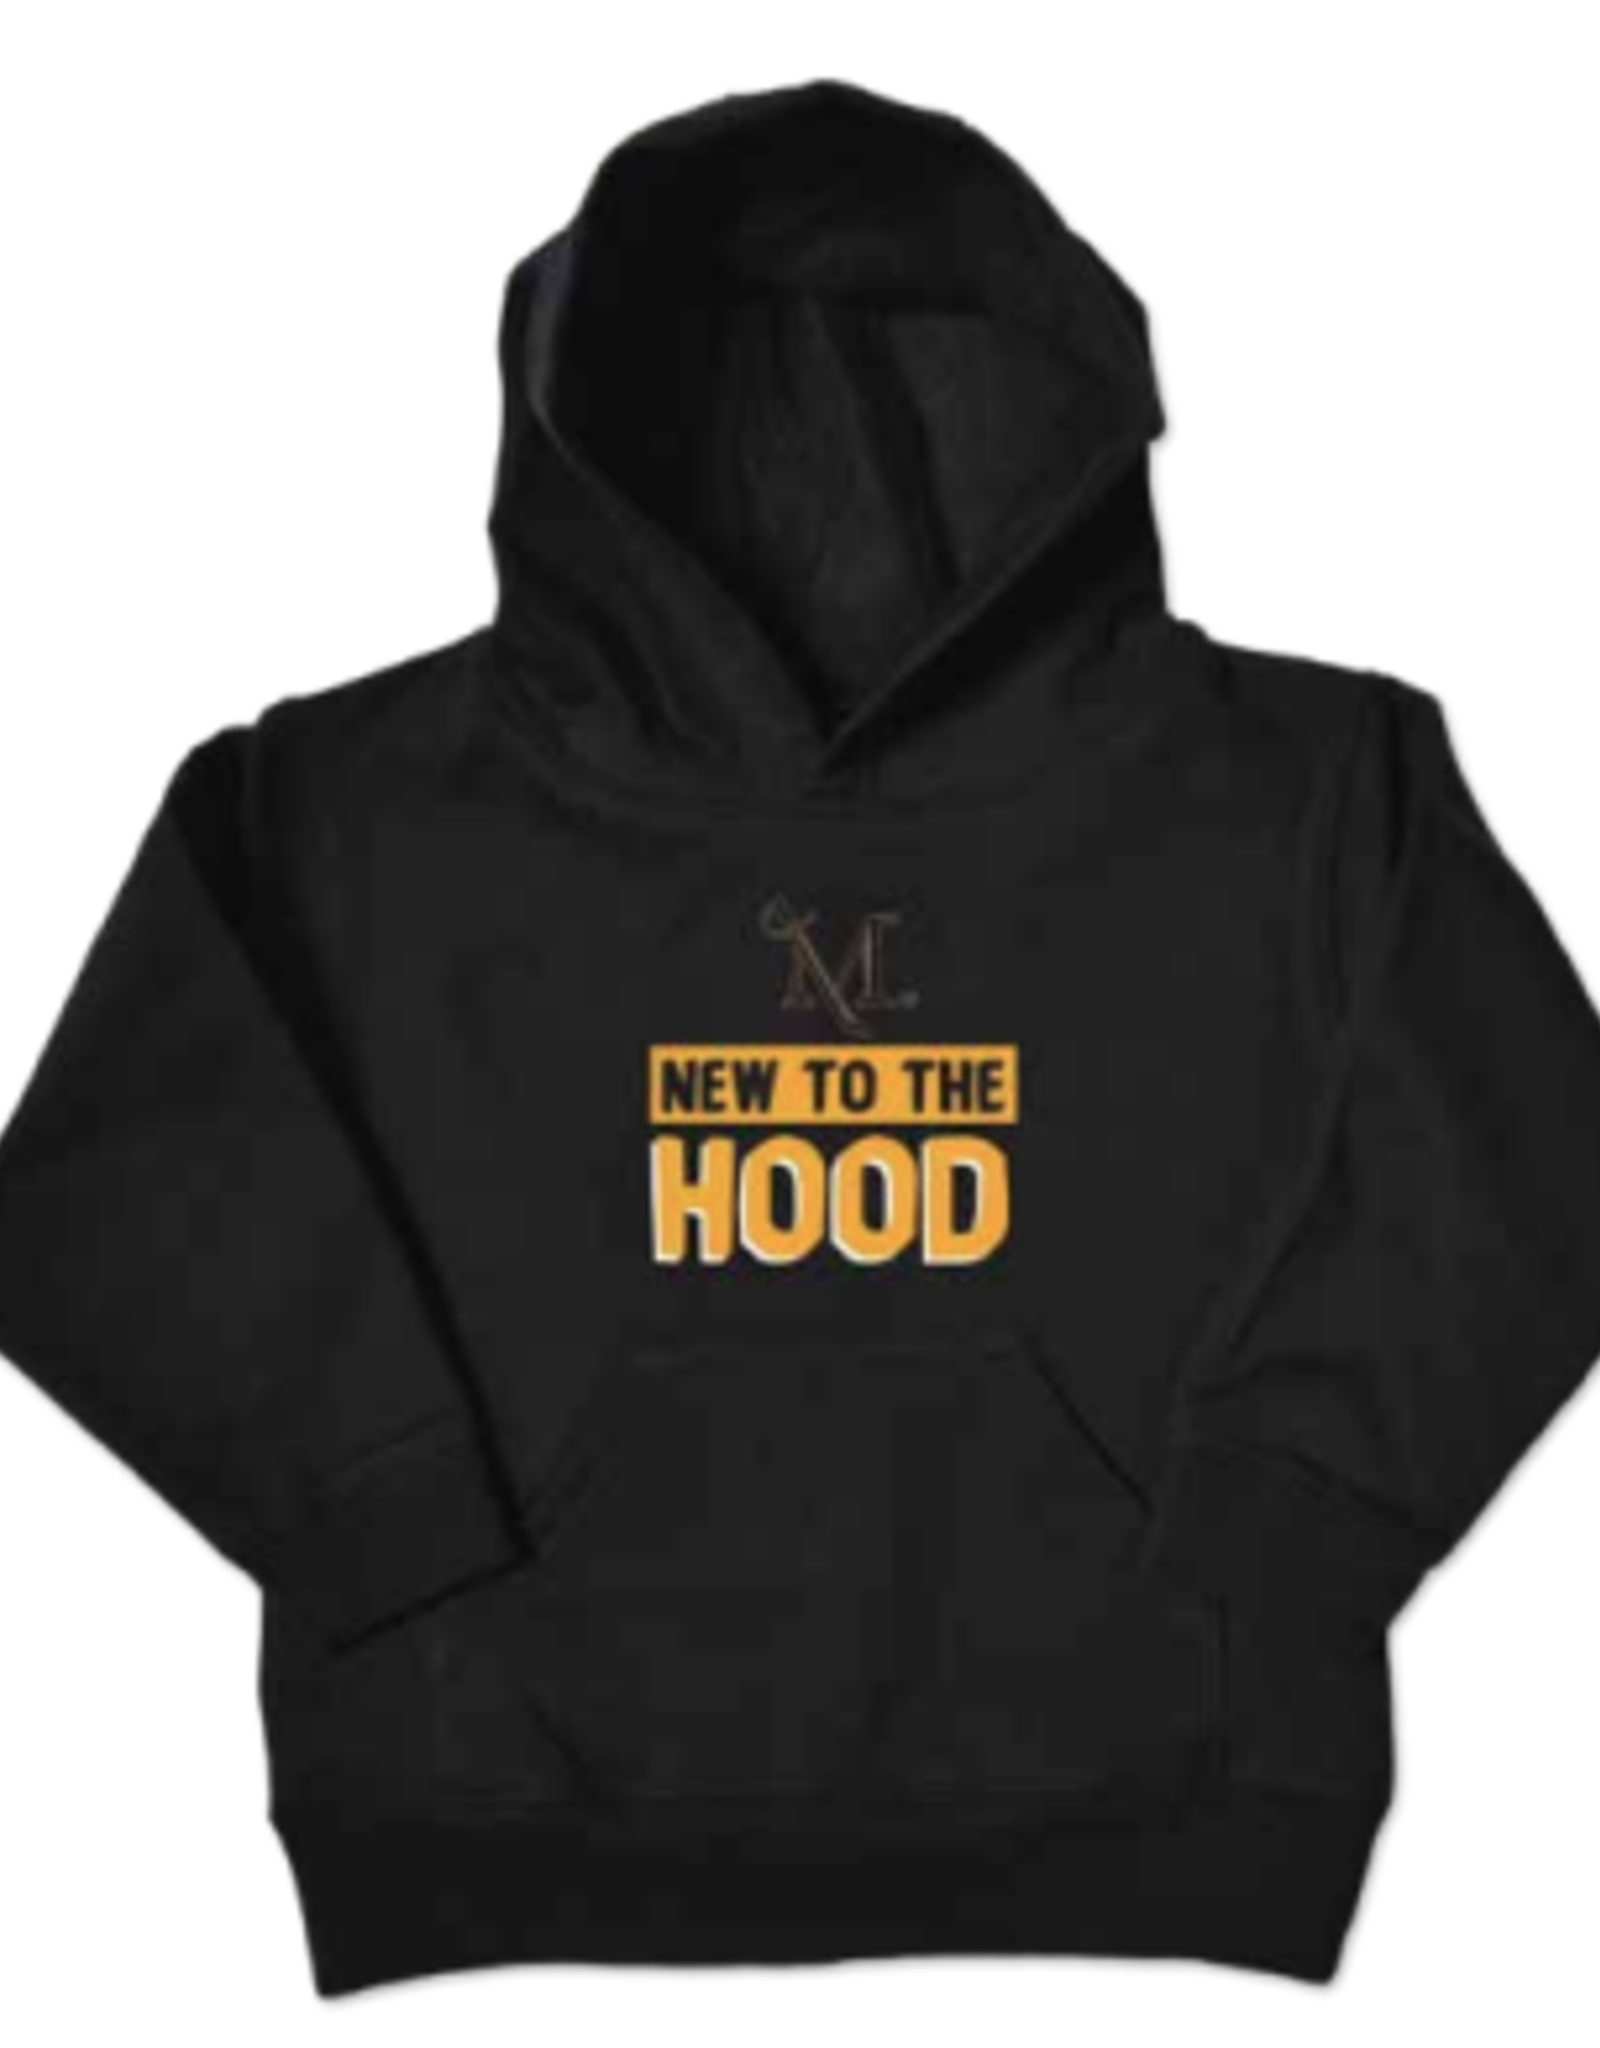 "New To The Hood" Sweatshirt - Sale!